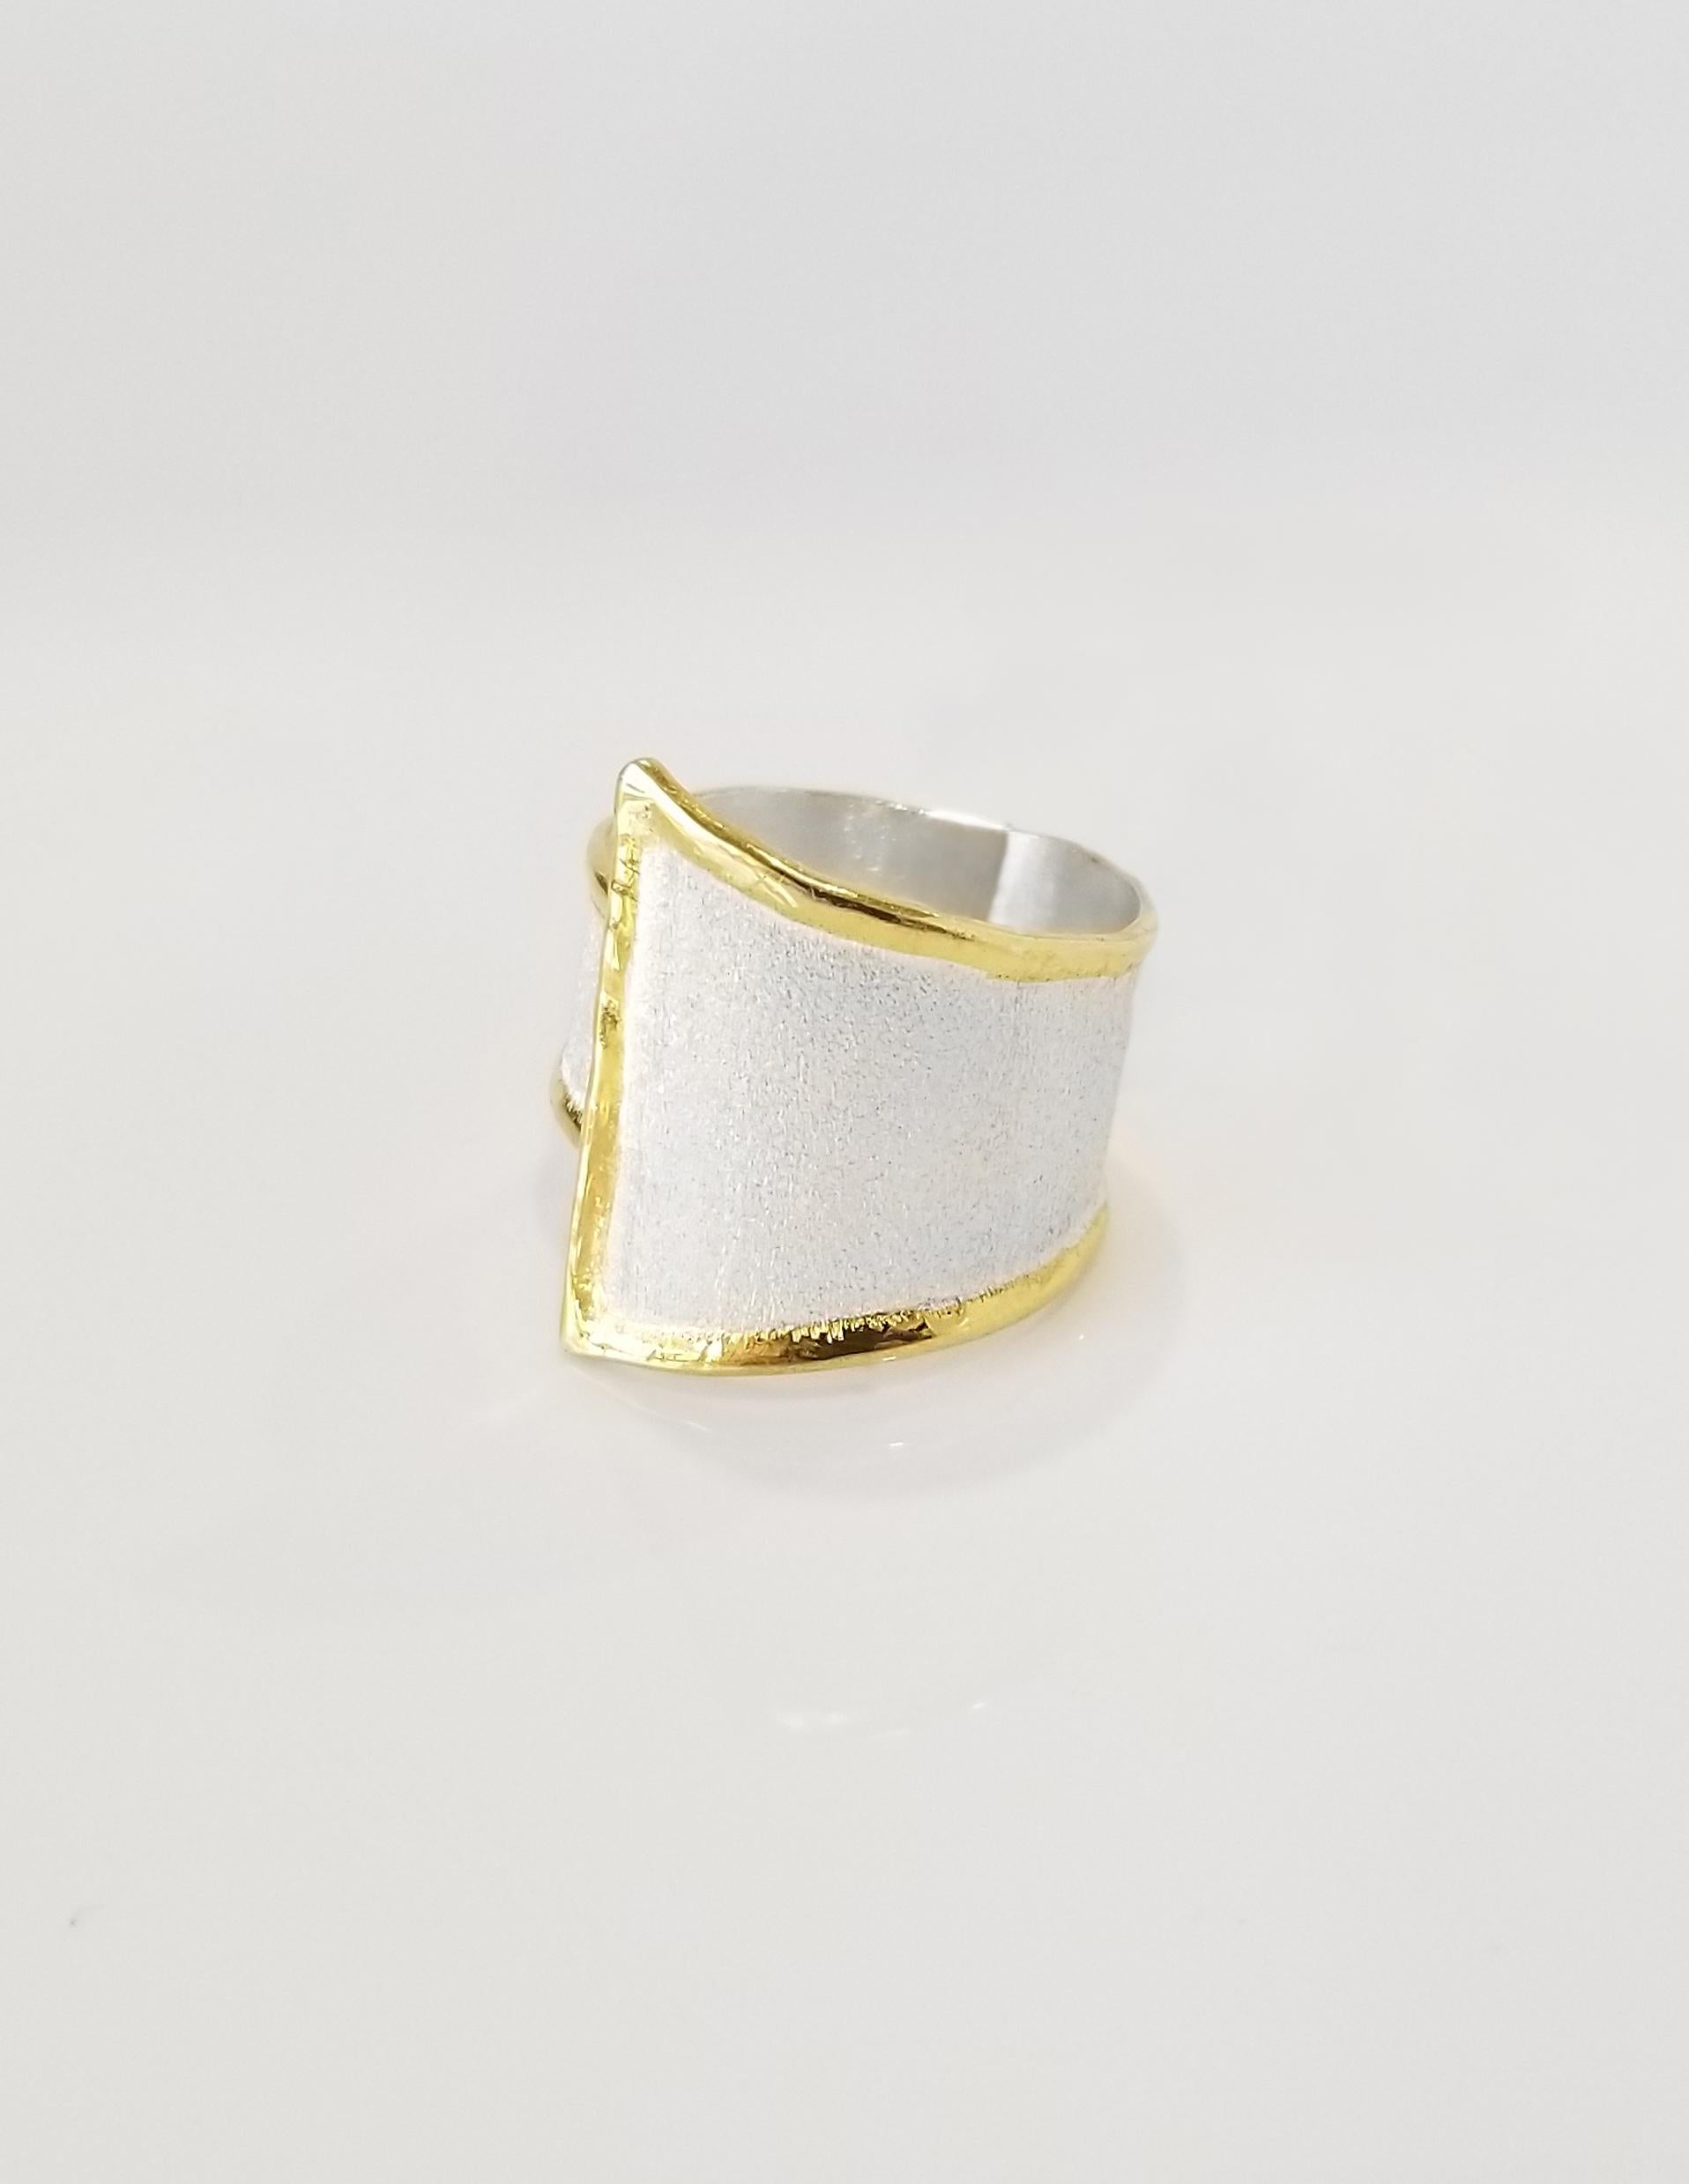 Der verstellbare Ring der Midas Collection von Yianni Creations aus 950er Feinsilber mit einer Auflage aus 24 Karat Gelbgold zeichnet sich durch einzigartige Handwerkstechniken aus - gebürstete Textur und von der Natur inspirierte flüssige Kanten.